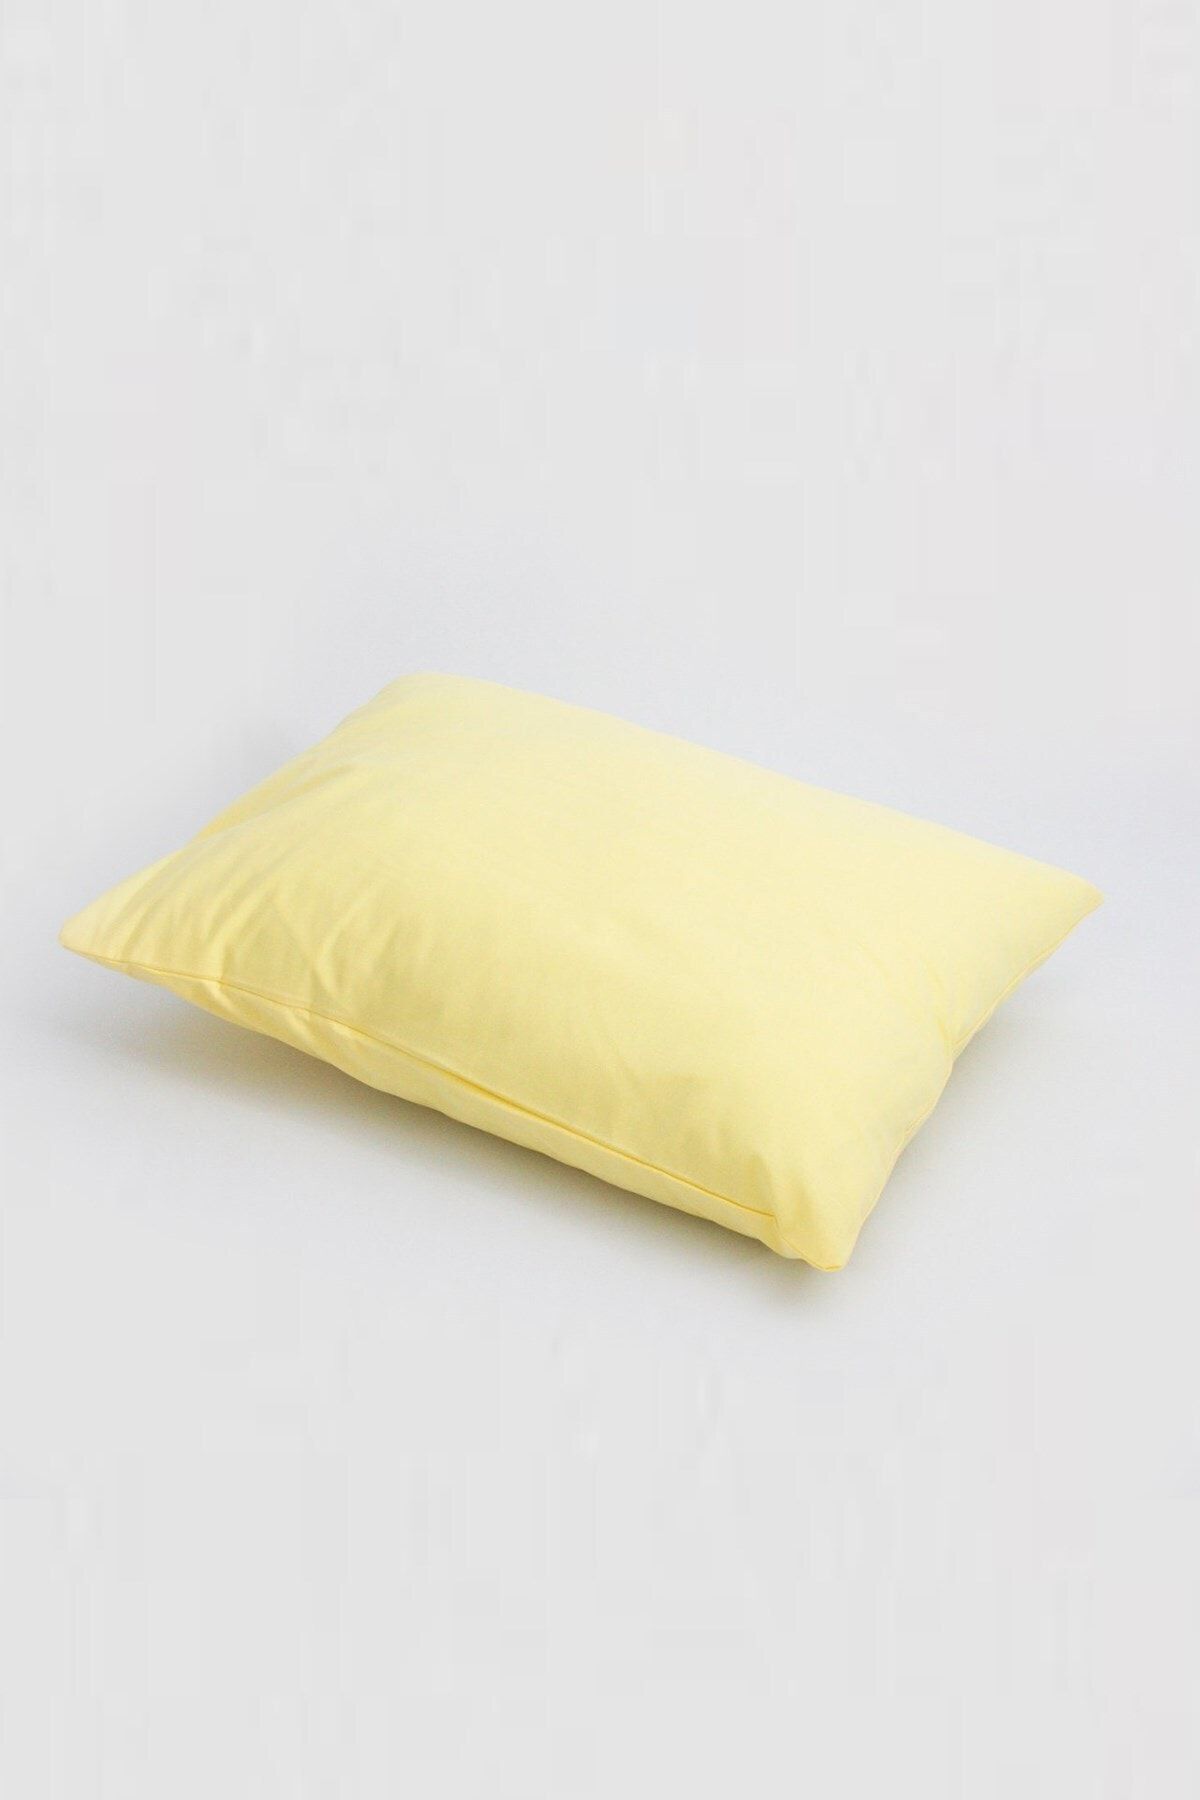 Jaju Baby Sarı Yastık Kılıfı 35*45 Cm